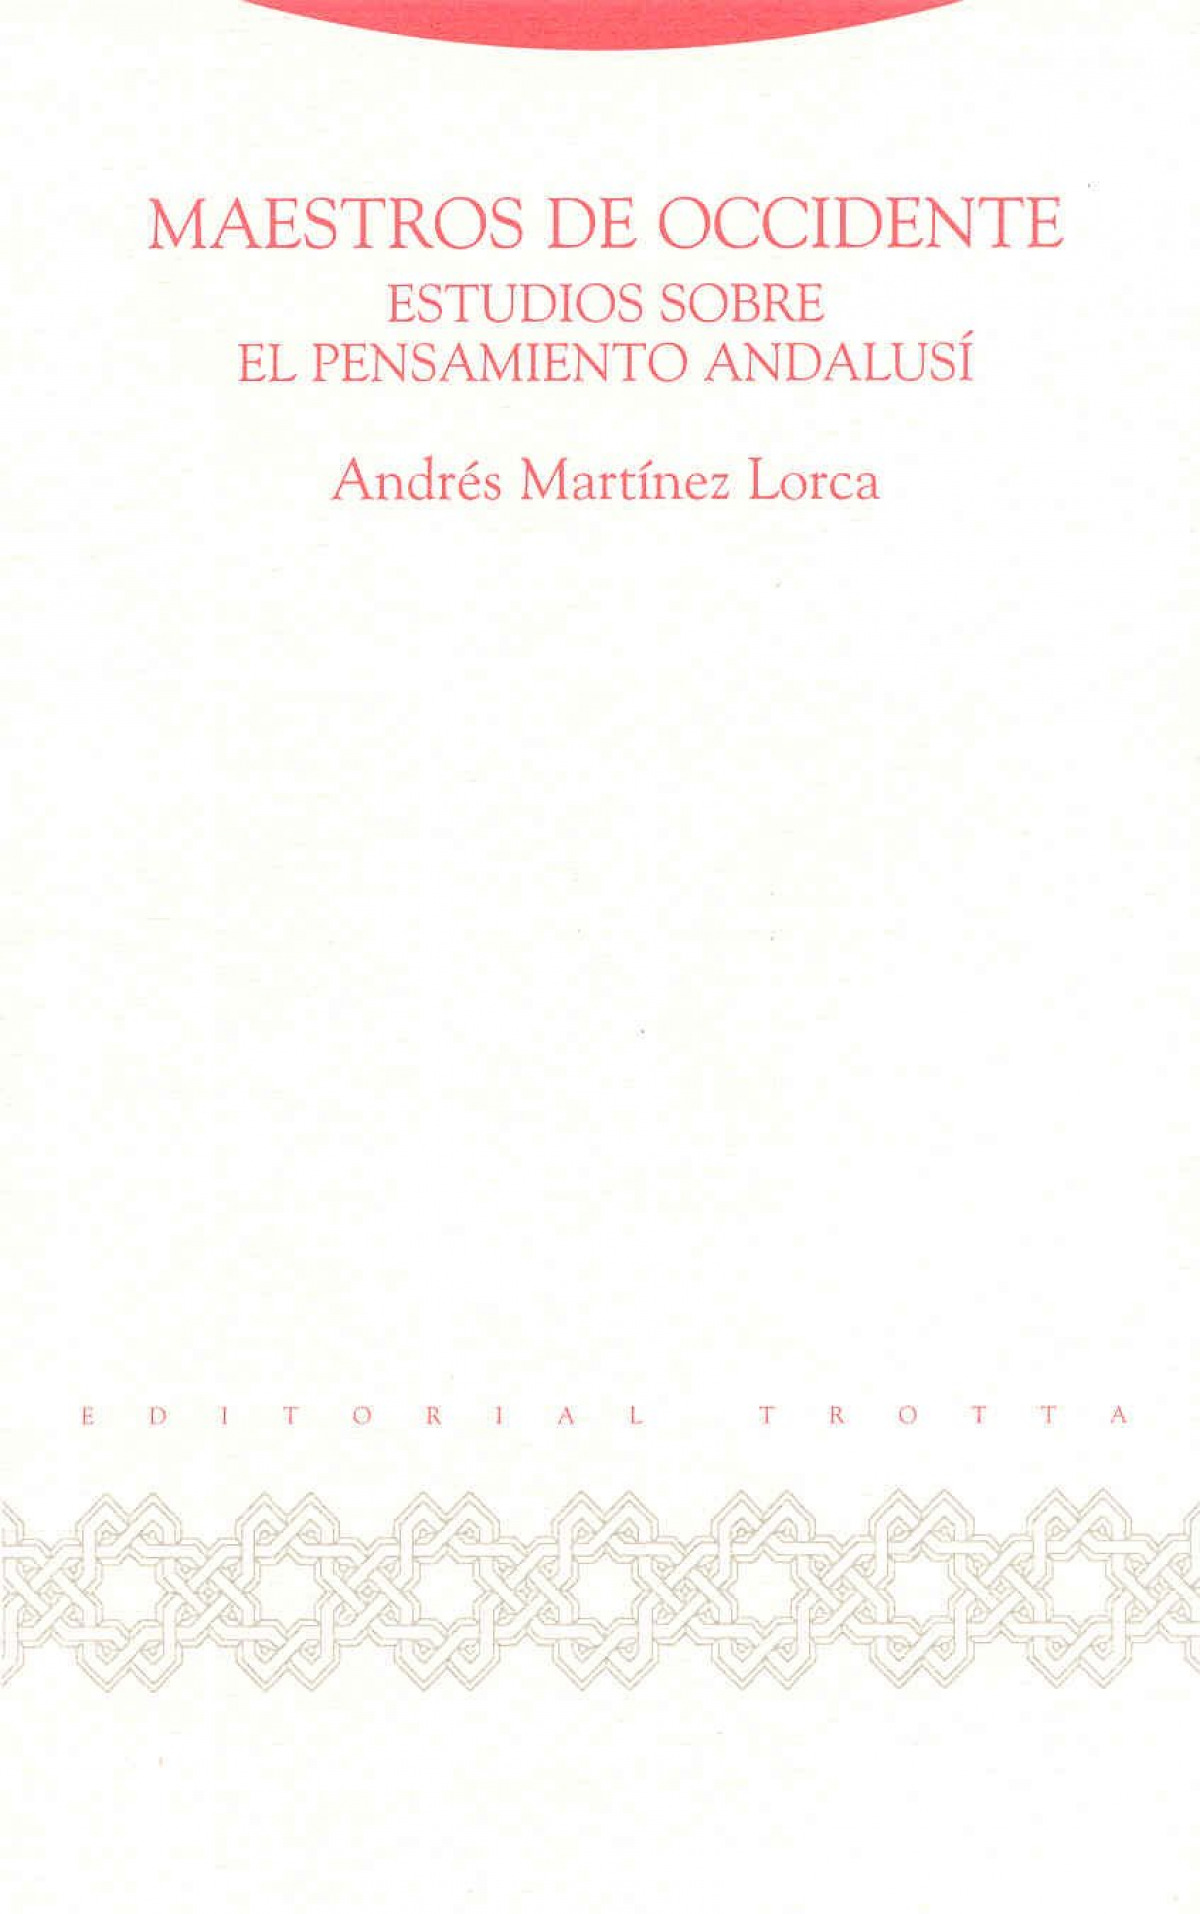 Maestros de occidente estudios sobre el pensamiento andalusi - Martínez Lorca, Andres